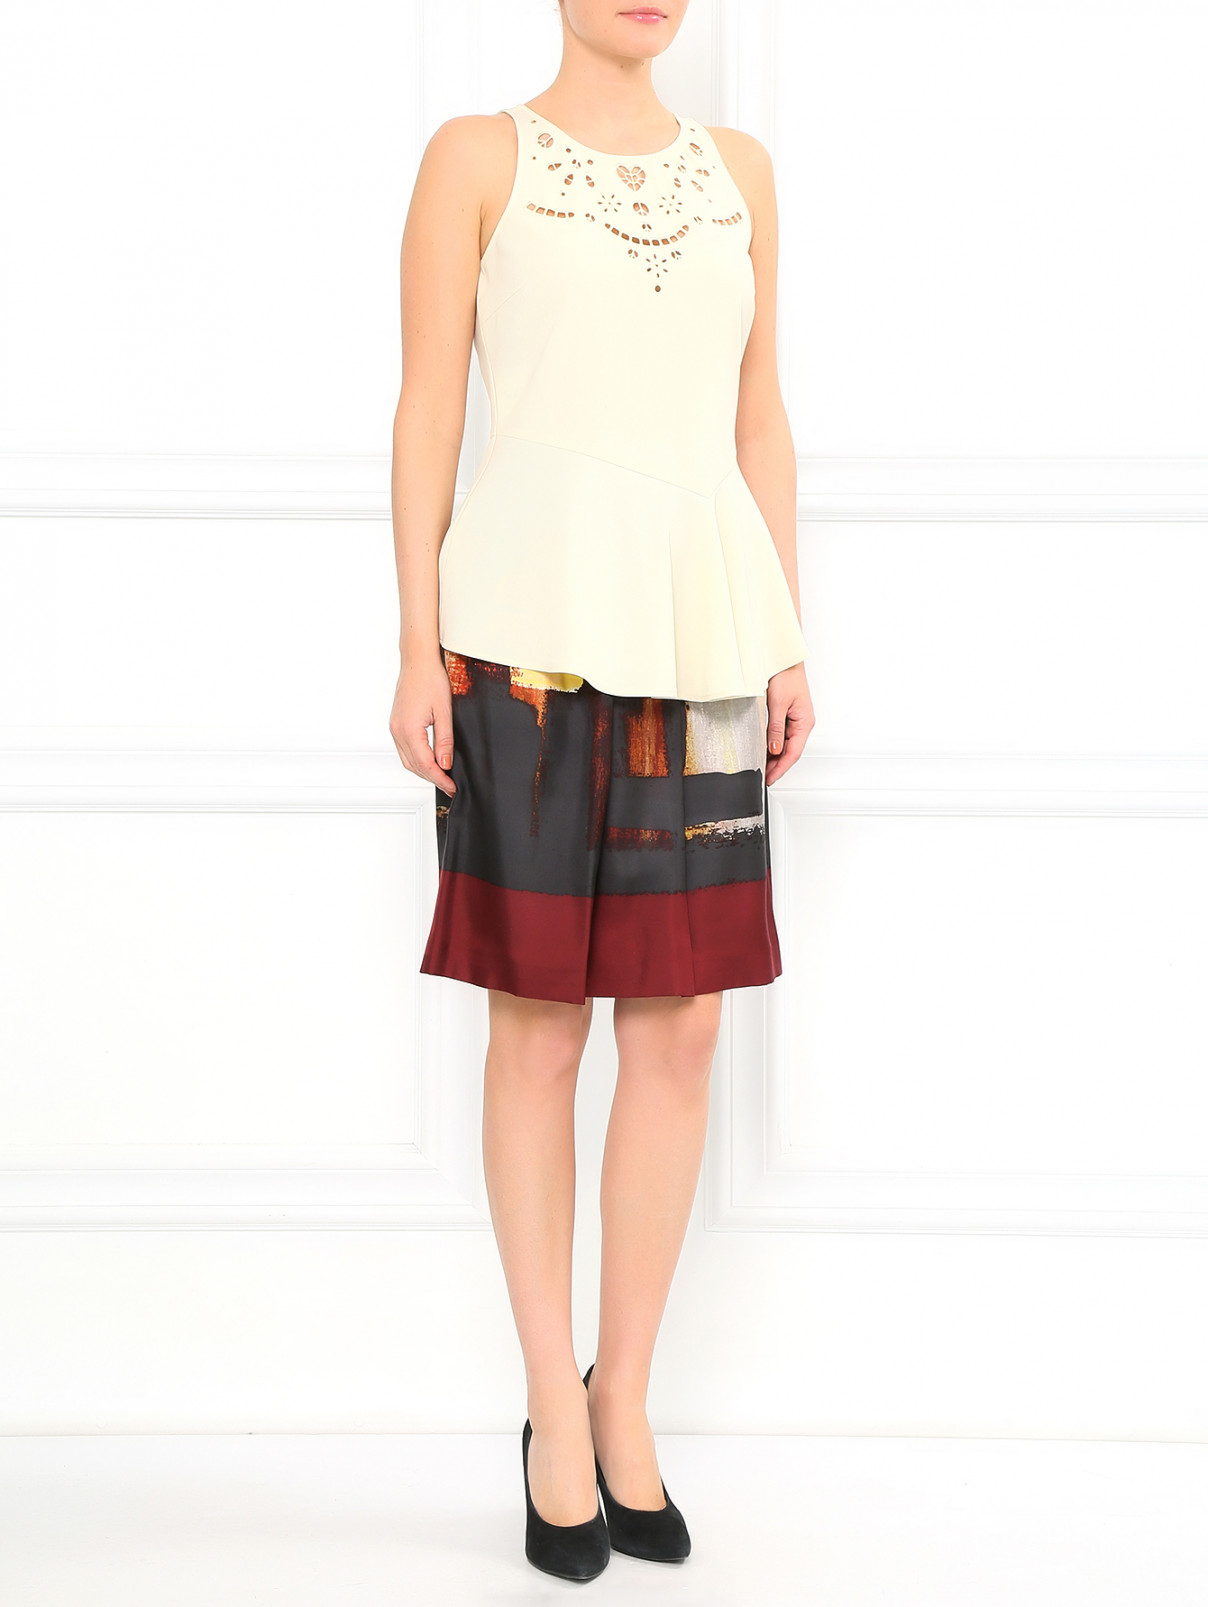 Блуза с вышивкой без рукавов Moschino Cheap&Chic  –  Модель Общий вид  – Цвет:  Бежевый